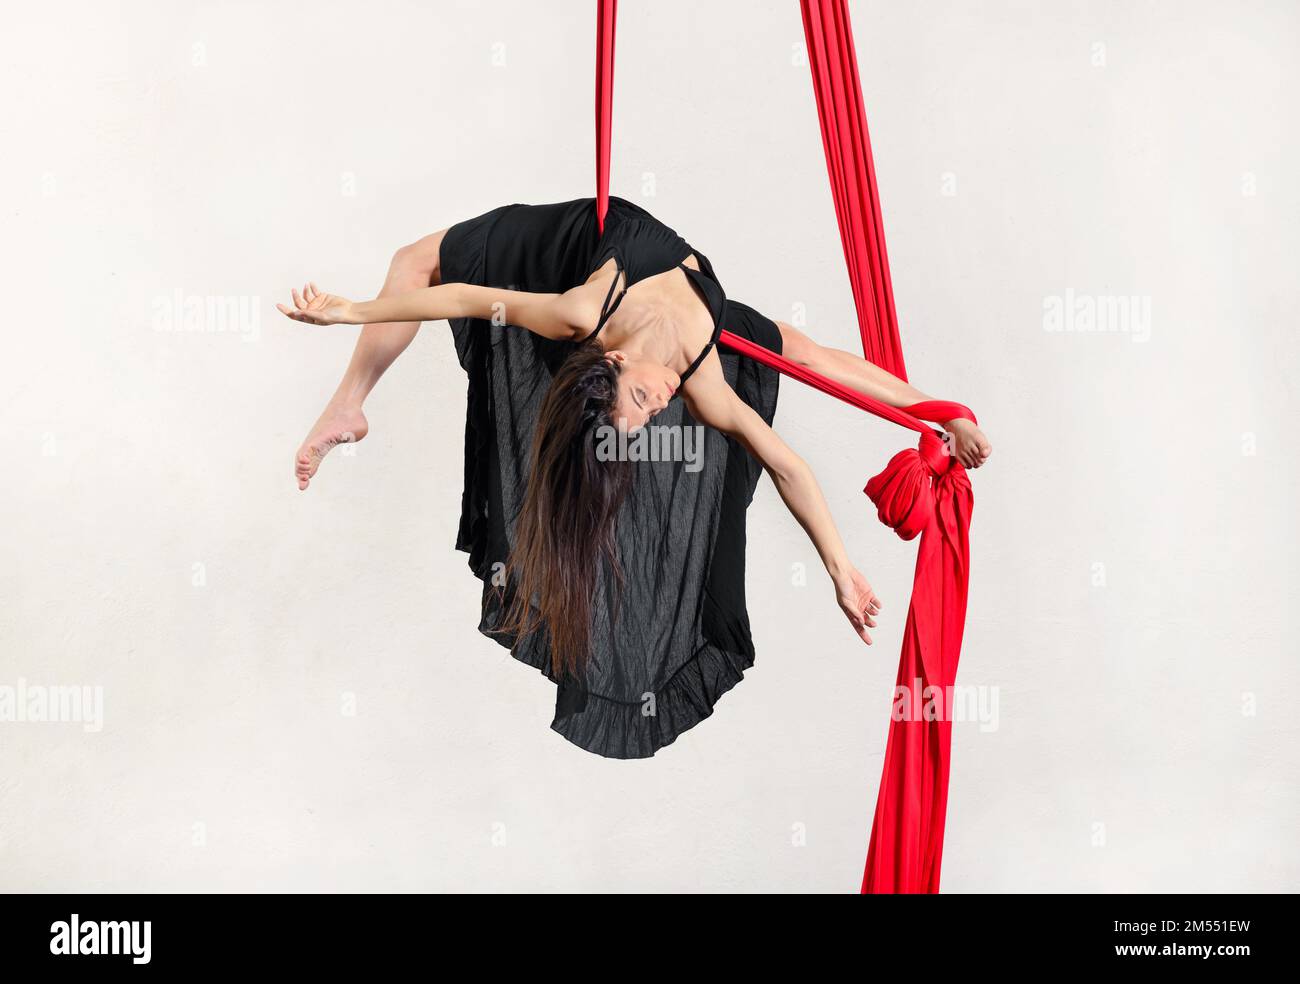 Corpo pieno di ballerina giovane e graziosa barefooted che si esibisce ad arco su sete aeree rosse appese su sfondo bianco Foto Stock